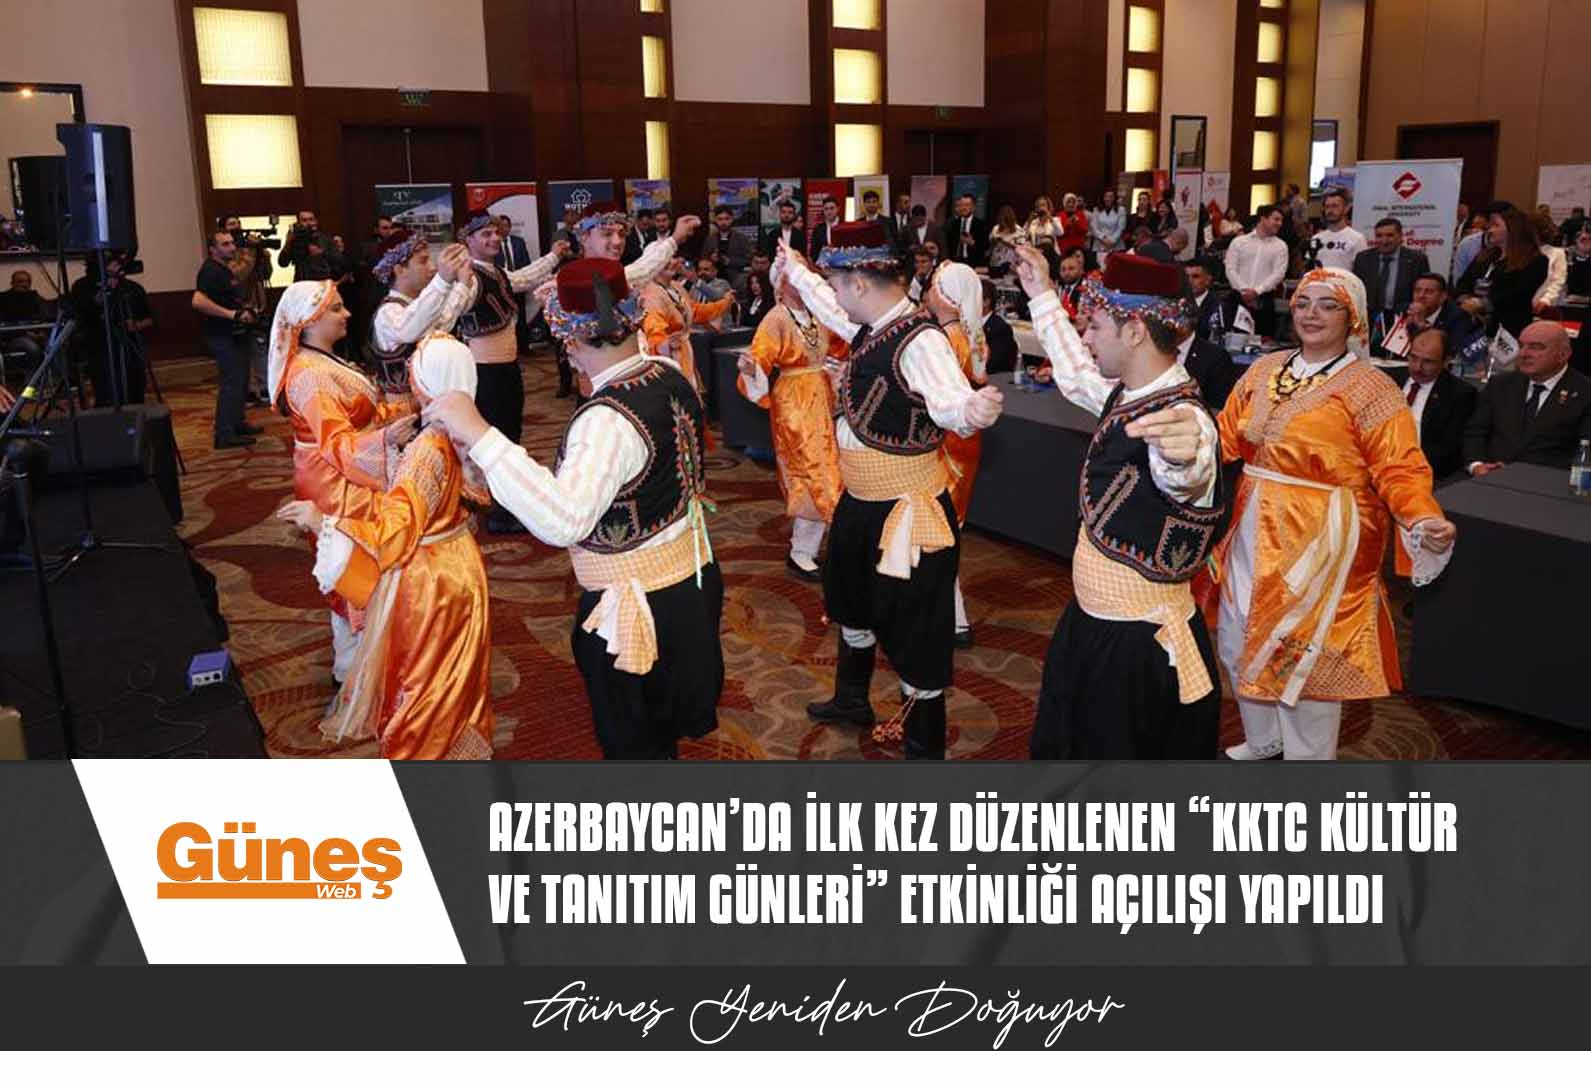 Azerbaycan’da ilk kez düzenlenen “KKTC Kültür ve Tanıtım Günleri” etkinliği açılışı yapıldı… Cumhurbaşkanı Tatar: “Biz aynı milletin evlatlarıyız”